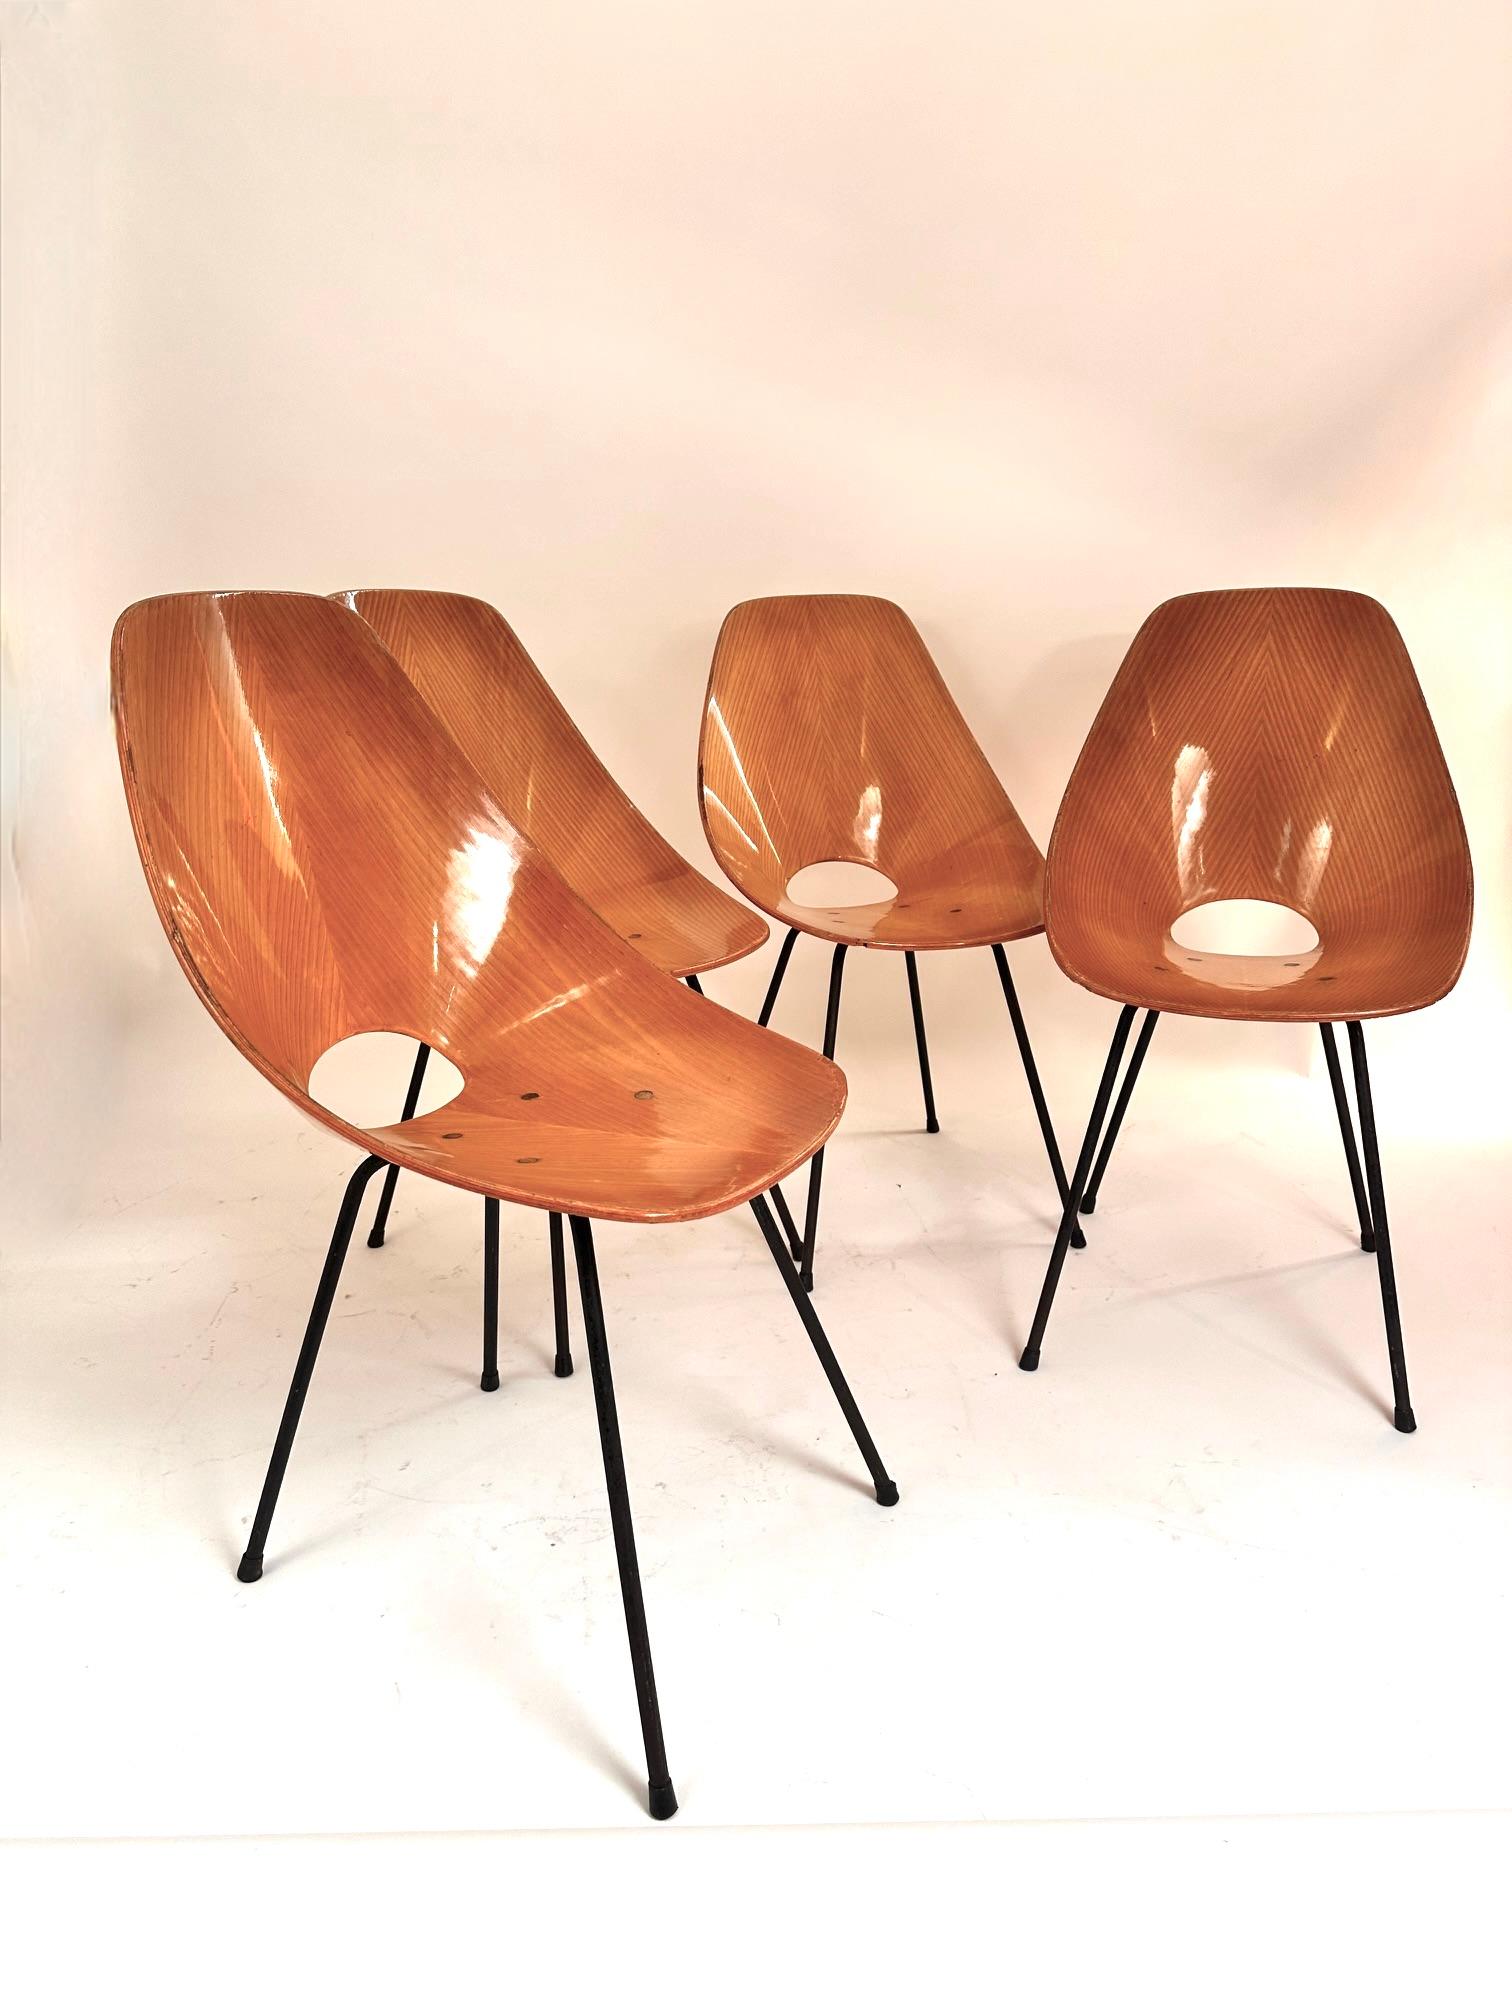 Un superbe ensemble de quatre chaises Medea conçues dans les années 50 par Vittorio Nobilis et éditées par Fratelli Tagliabue.Excellent état de structure et signes mineurs d'utilisation sur les bords.Belle...  patine.
Expédition gratuite vers les